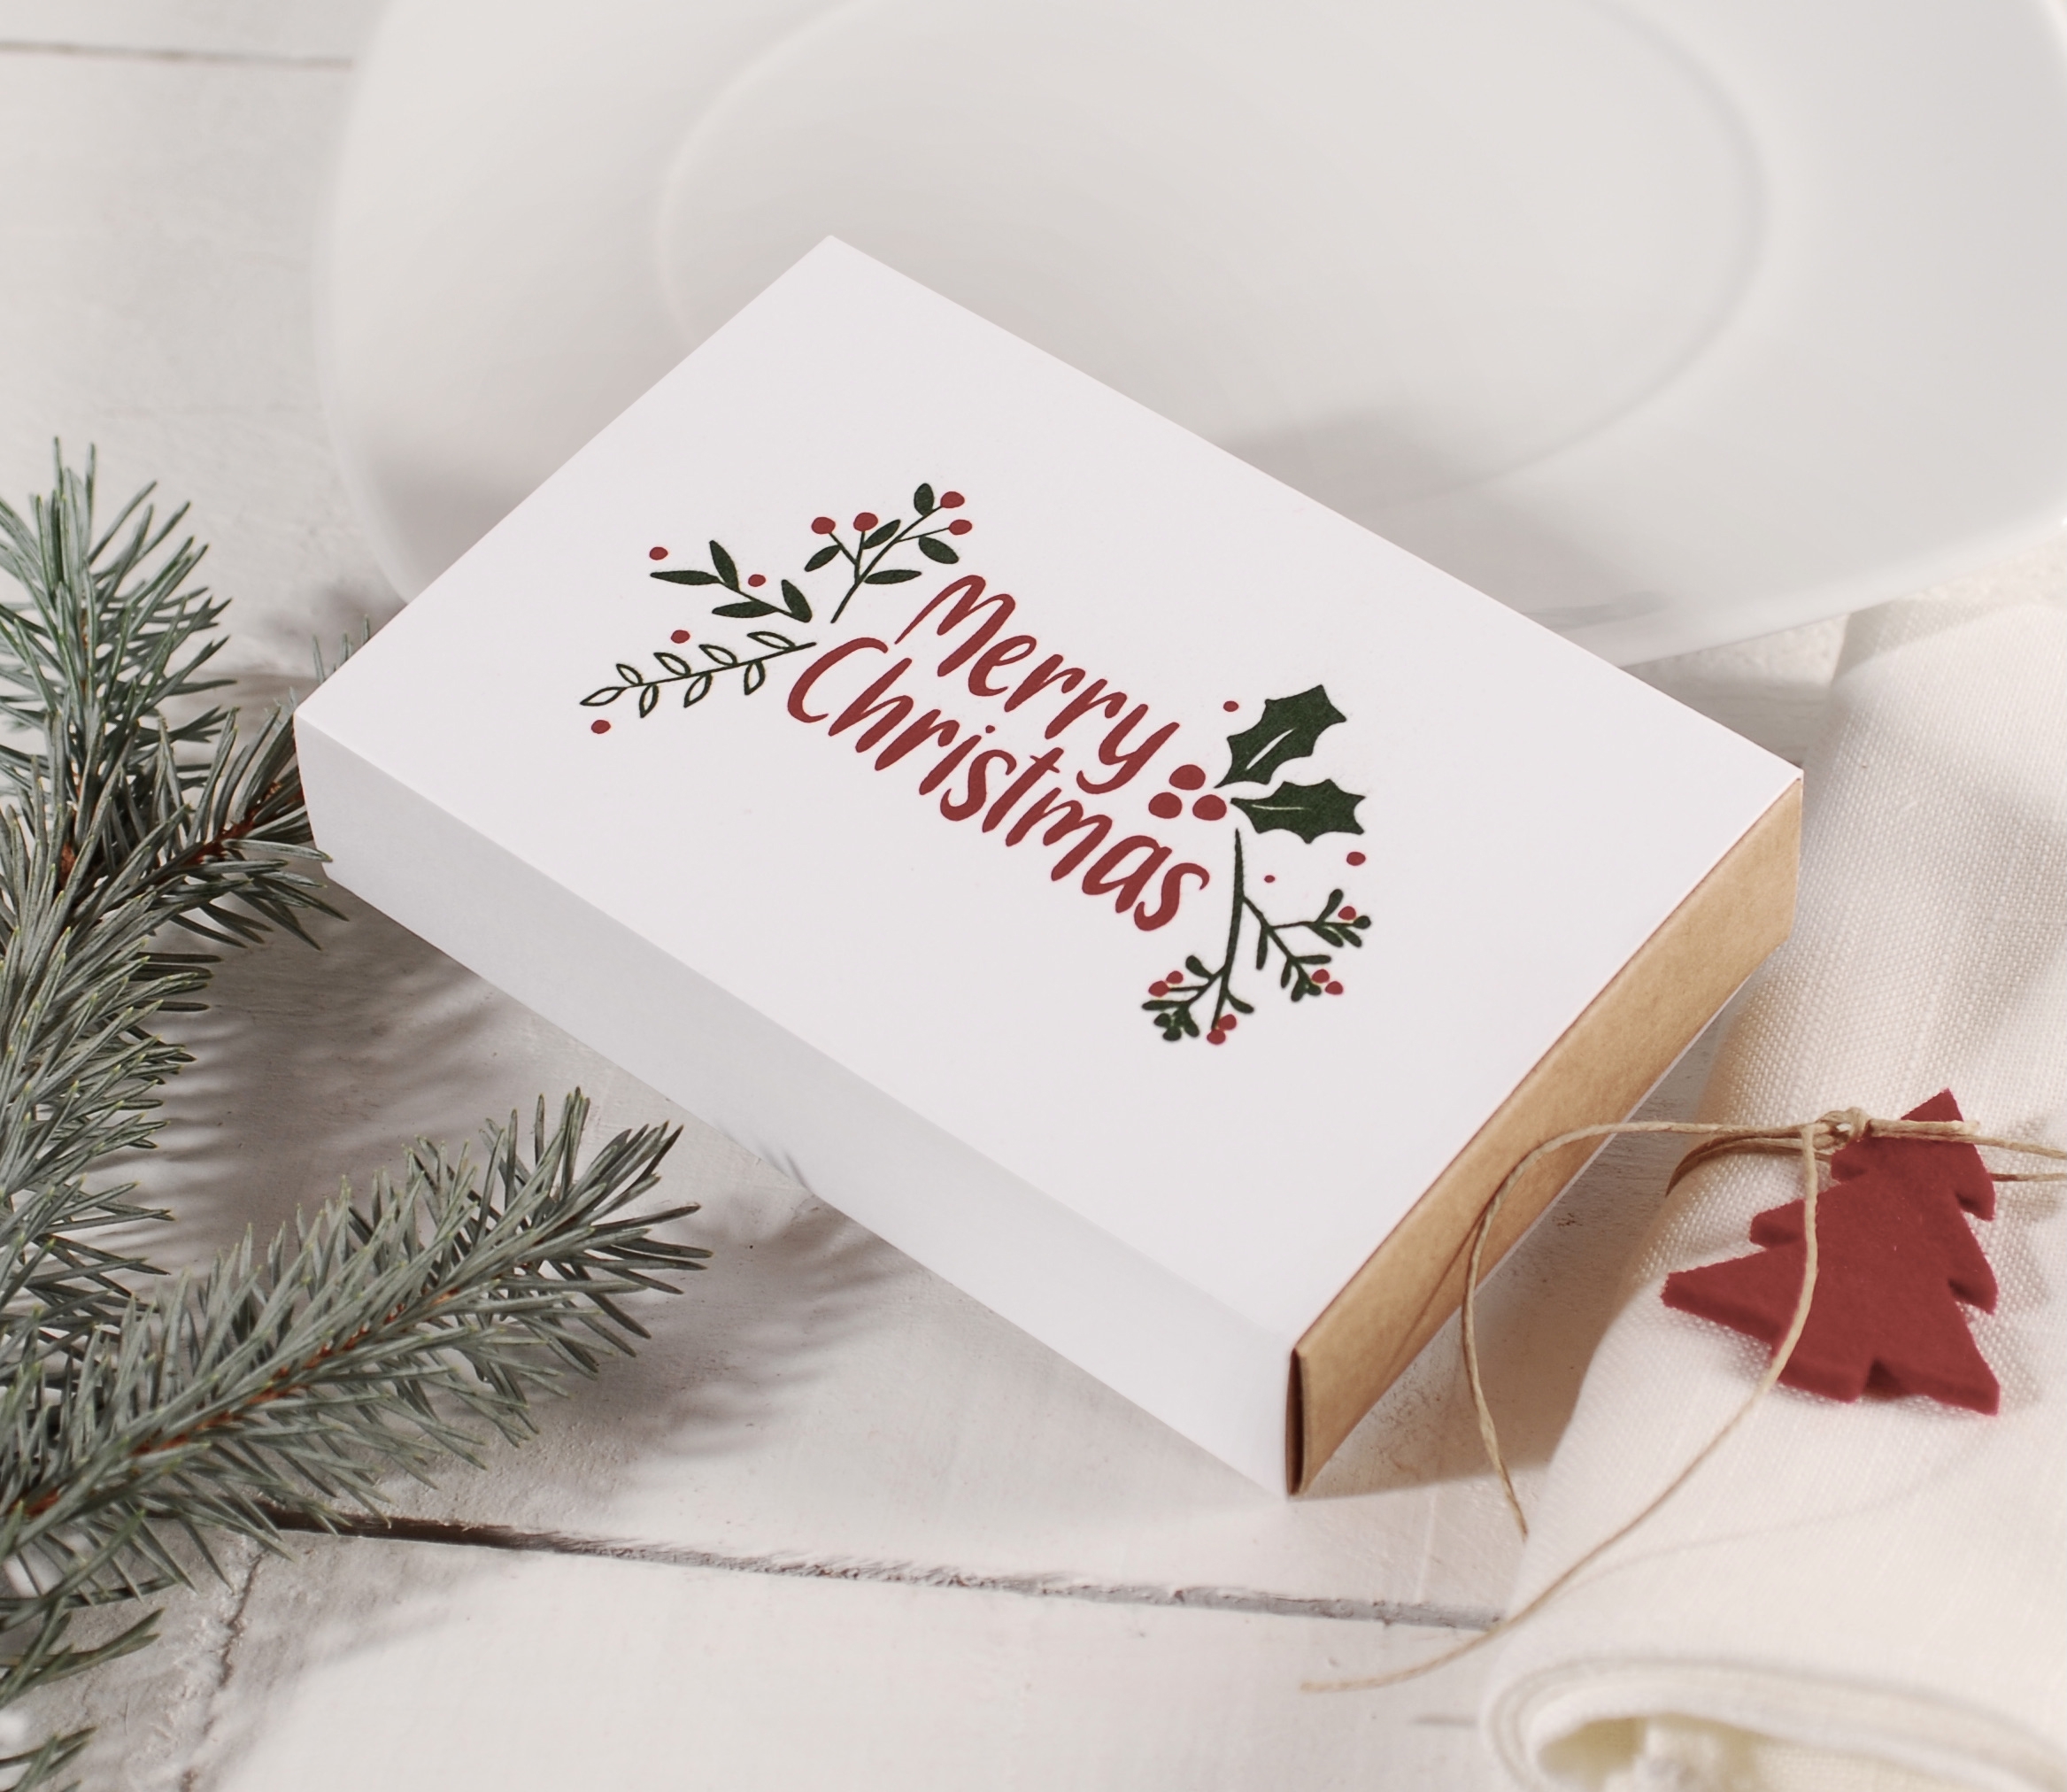  Cartes cadeaux de Noël : Boutique cartes cadeaux